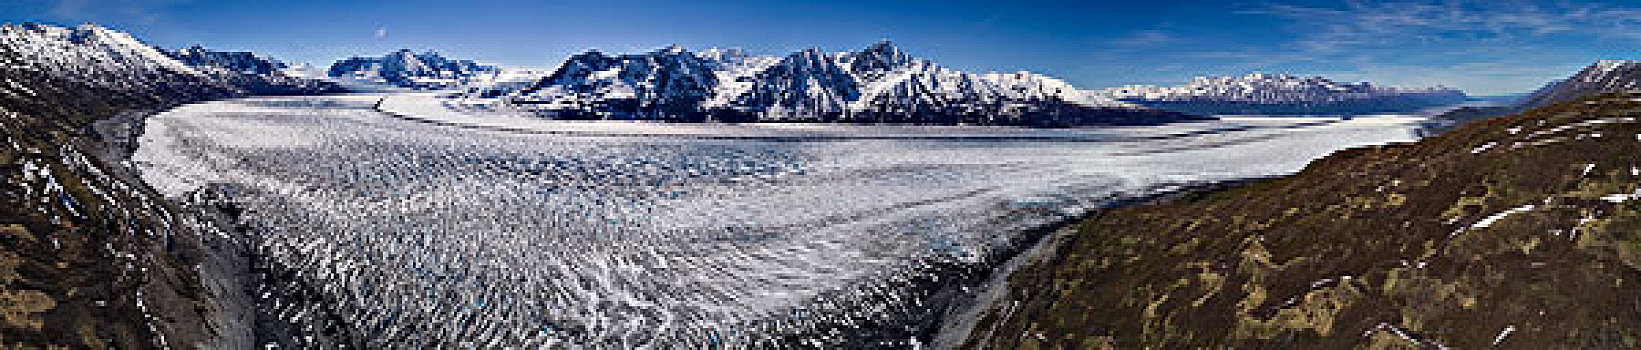 全景,冰河,山,冬天,阿拉斯加,美国